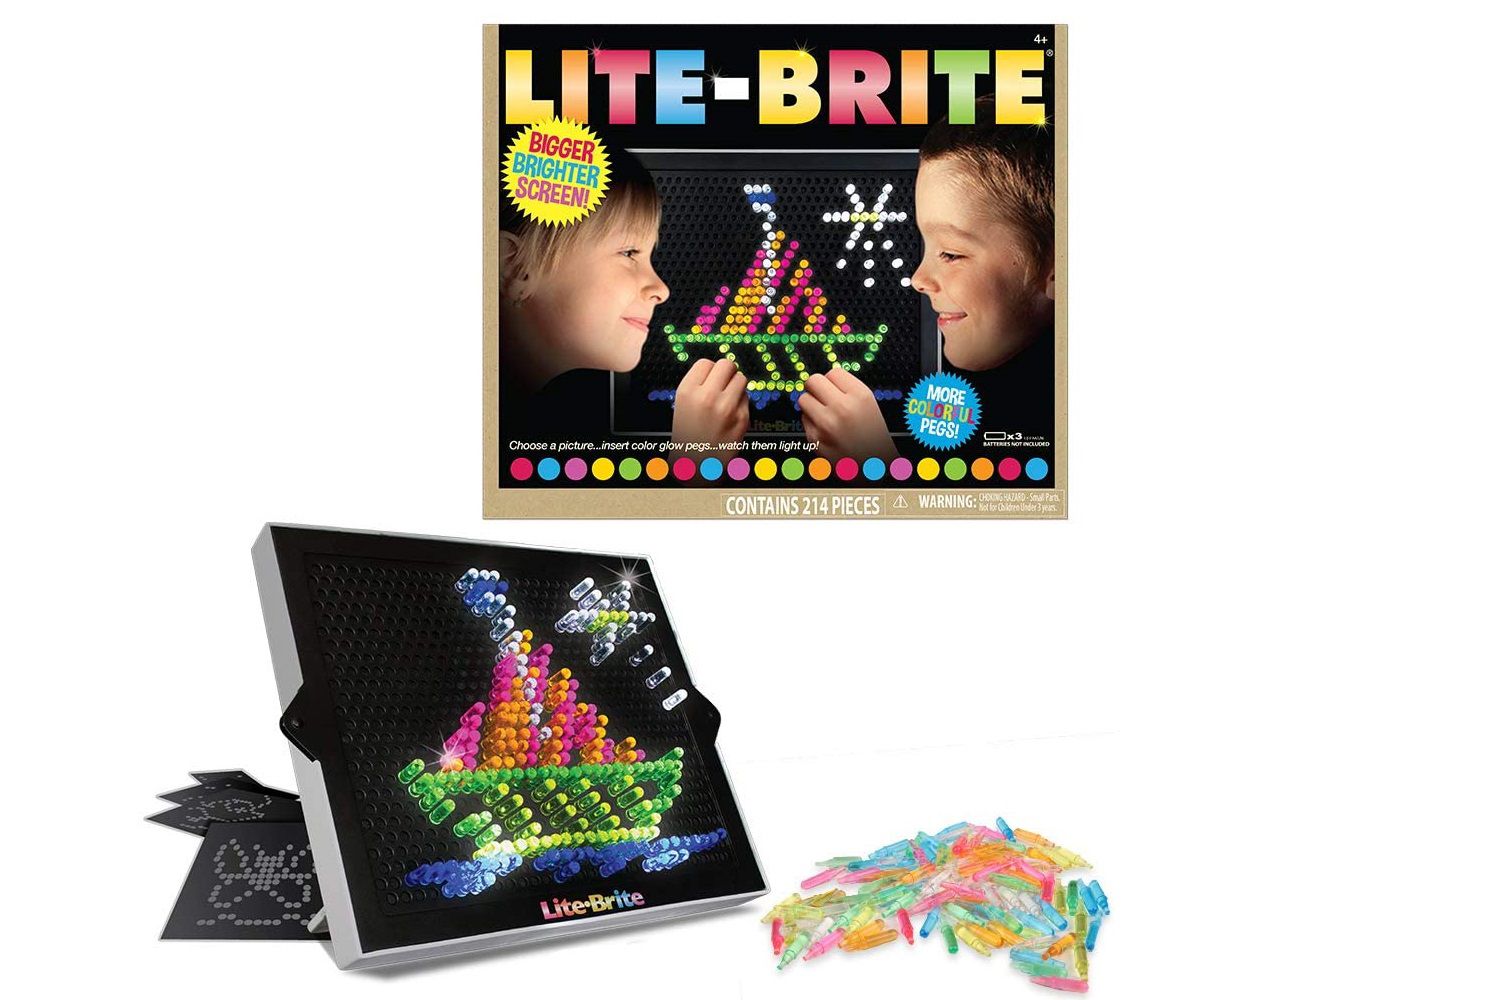 Lite-Brite终极经典复古和复古玩具